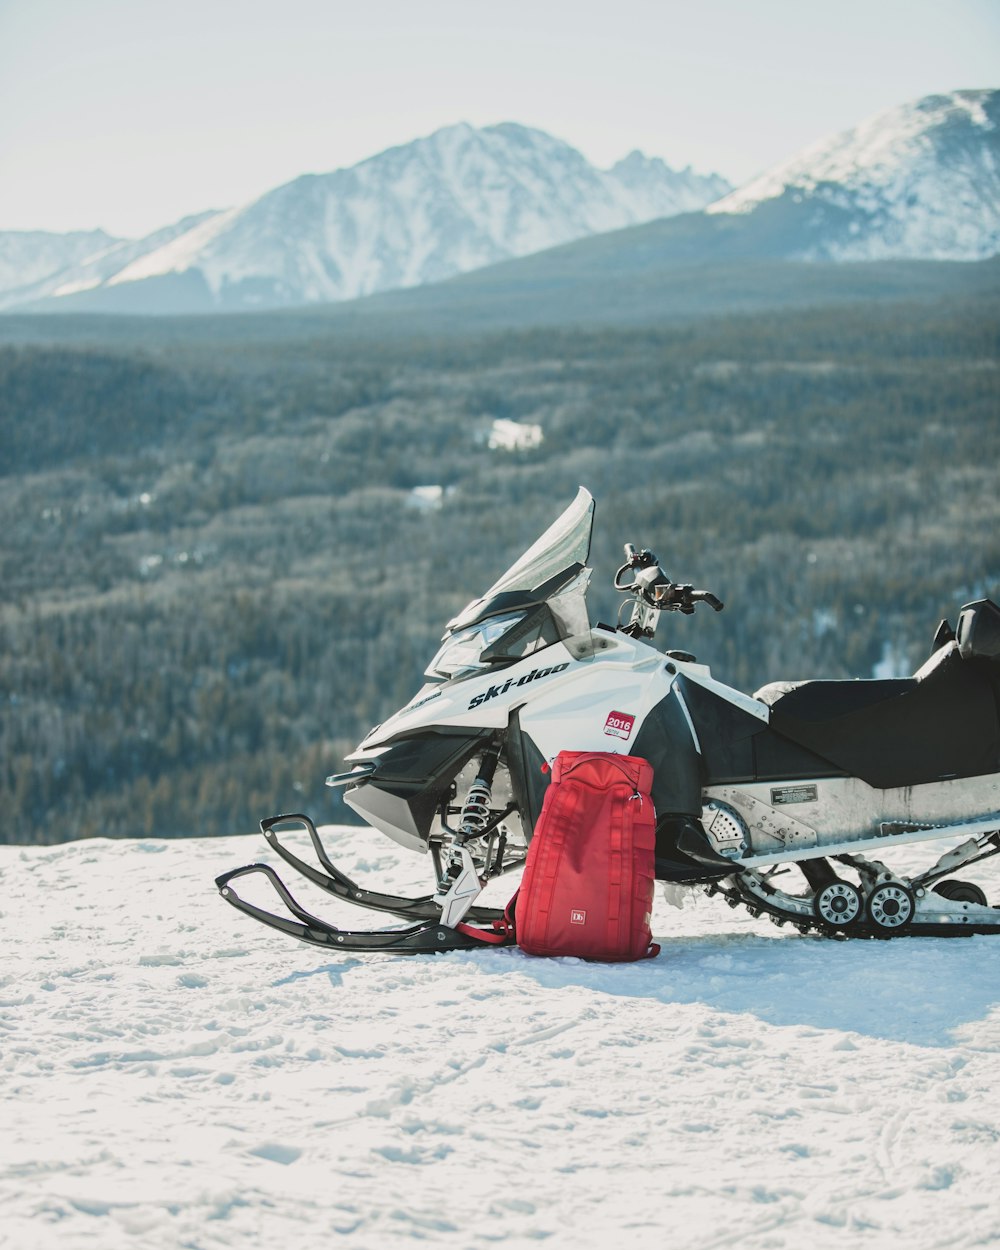 Moto de nieve blanca y negra con mochila roja en la cima de la montaña